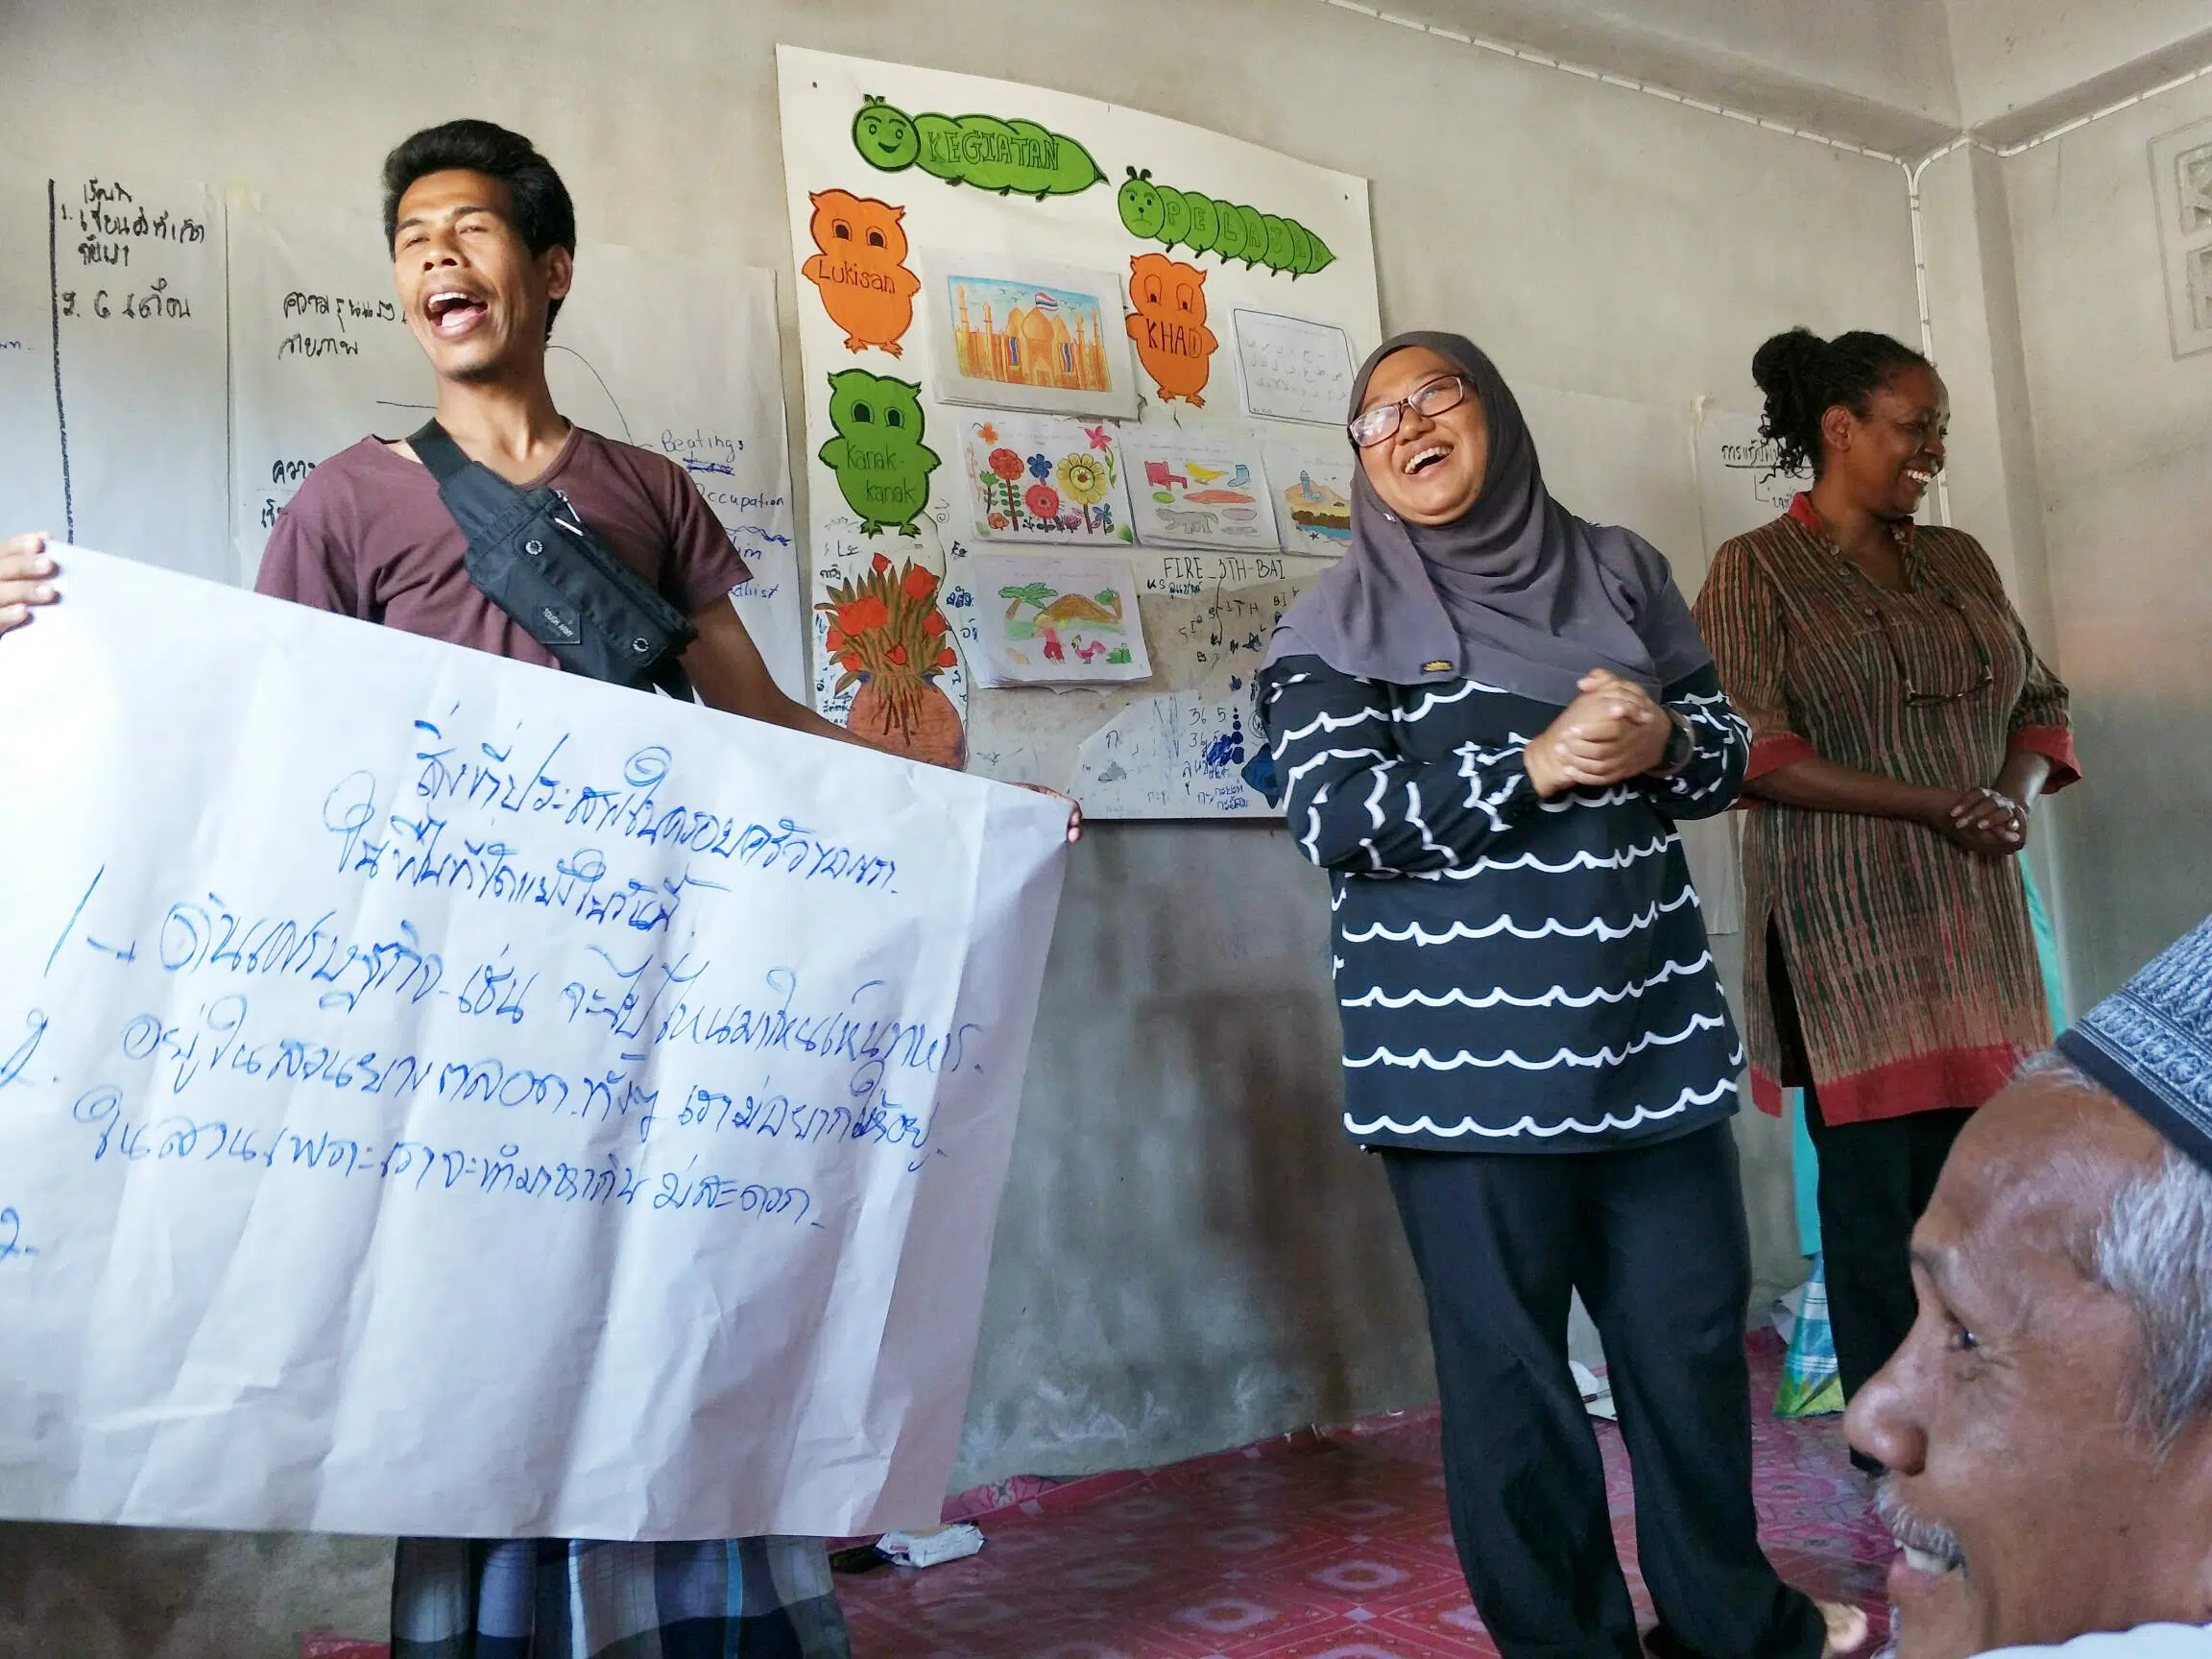 شخصان يغنيان ويبتسمان ويحملان لافتة عليها حروف تايلندية خلال تدريب في جنوب تايلاند. موظفو NP يبتسمون بجانب شخصين.